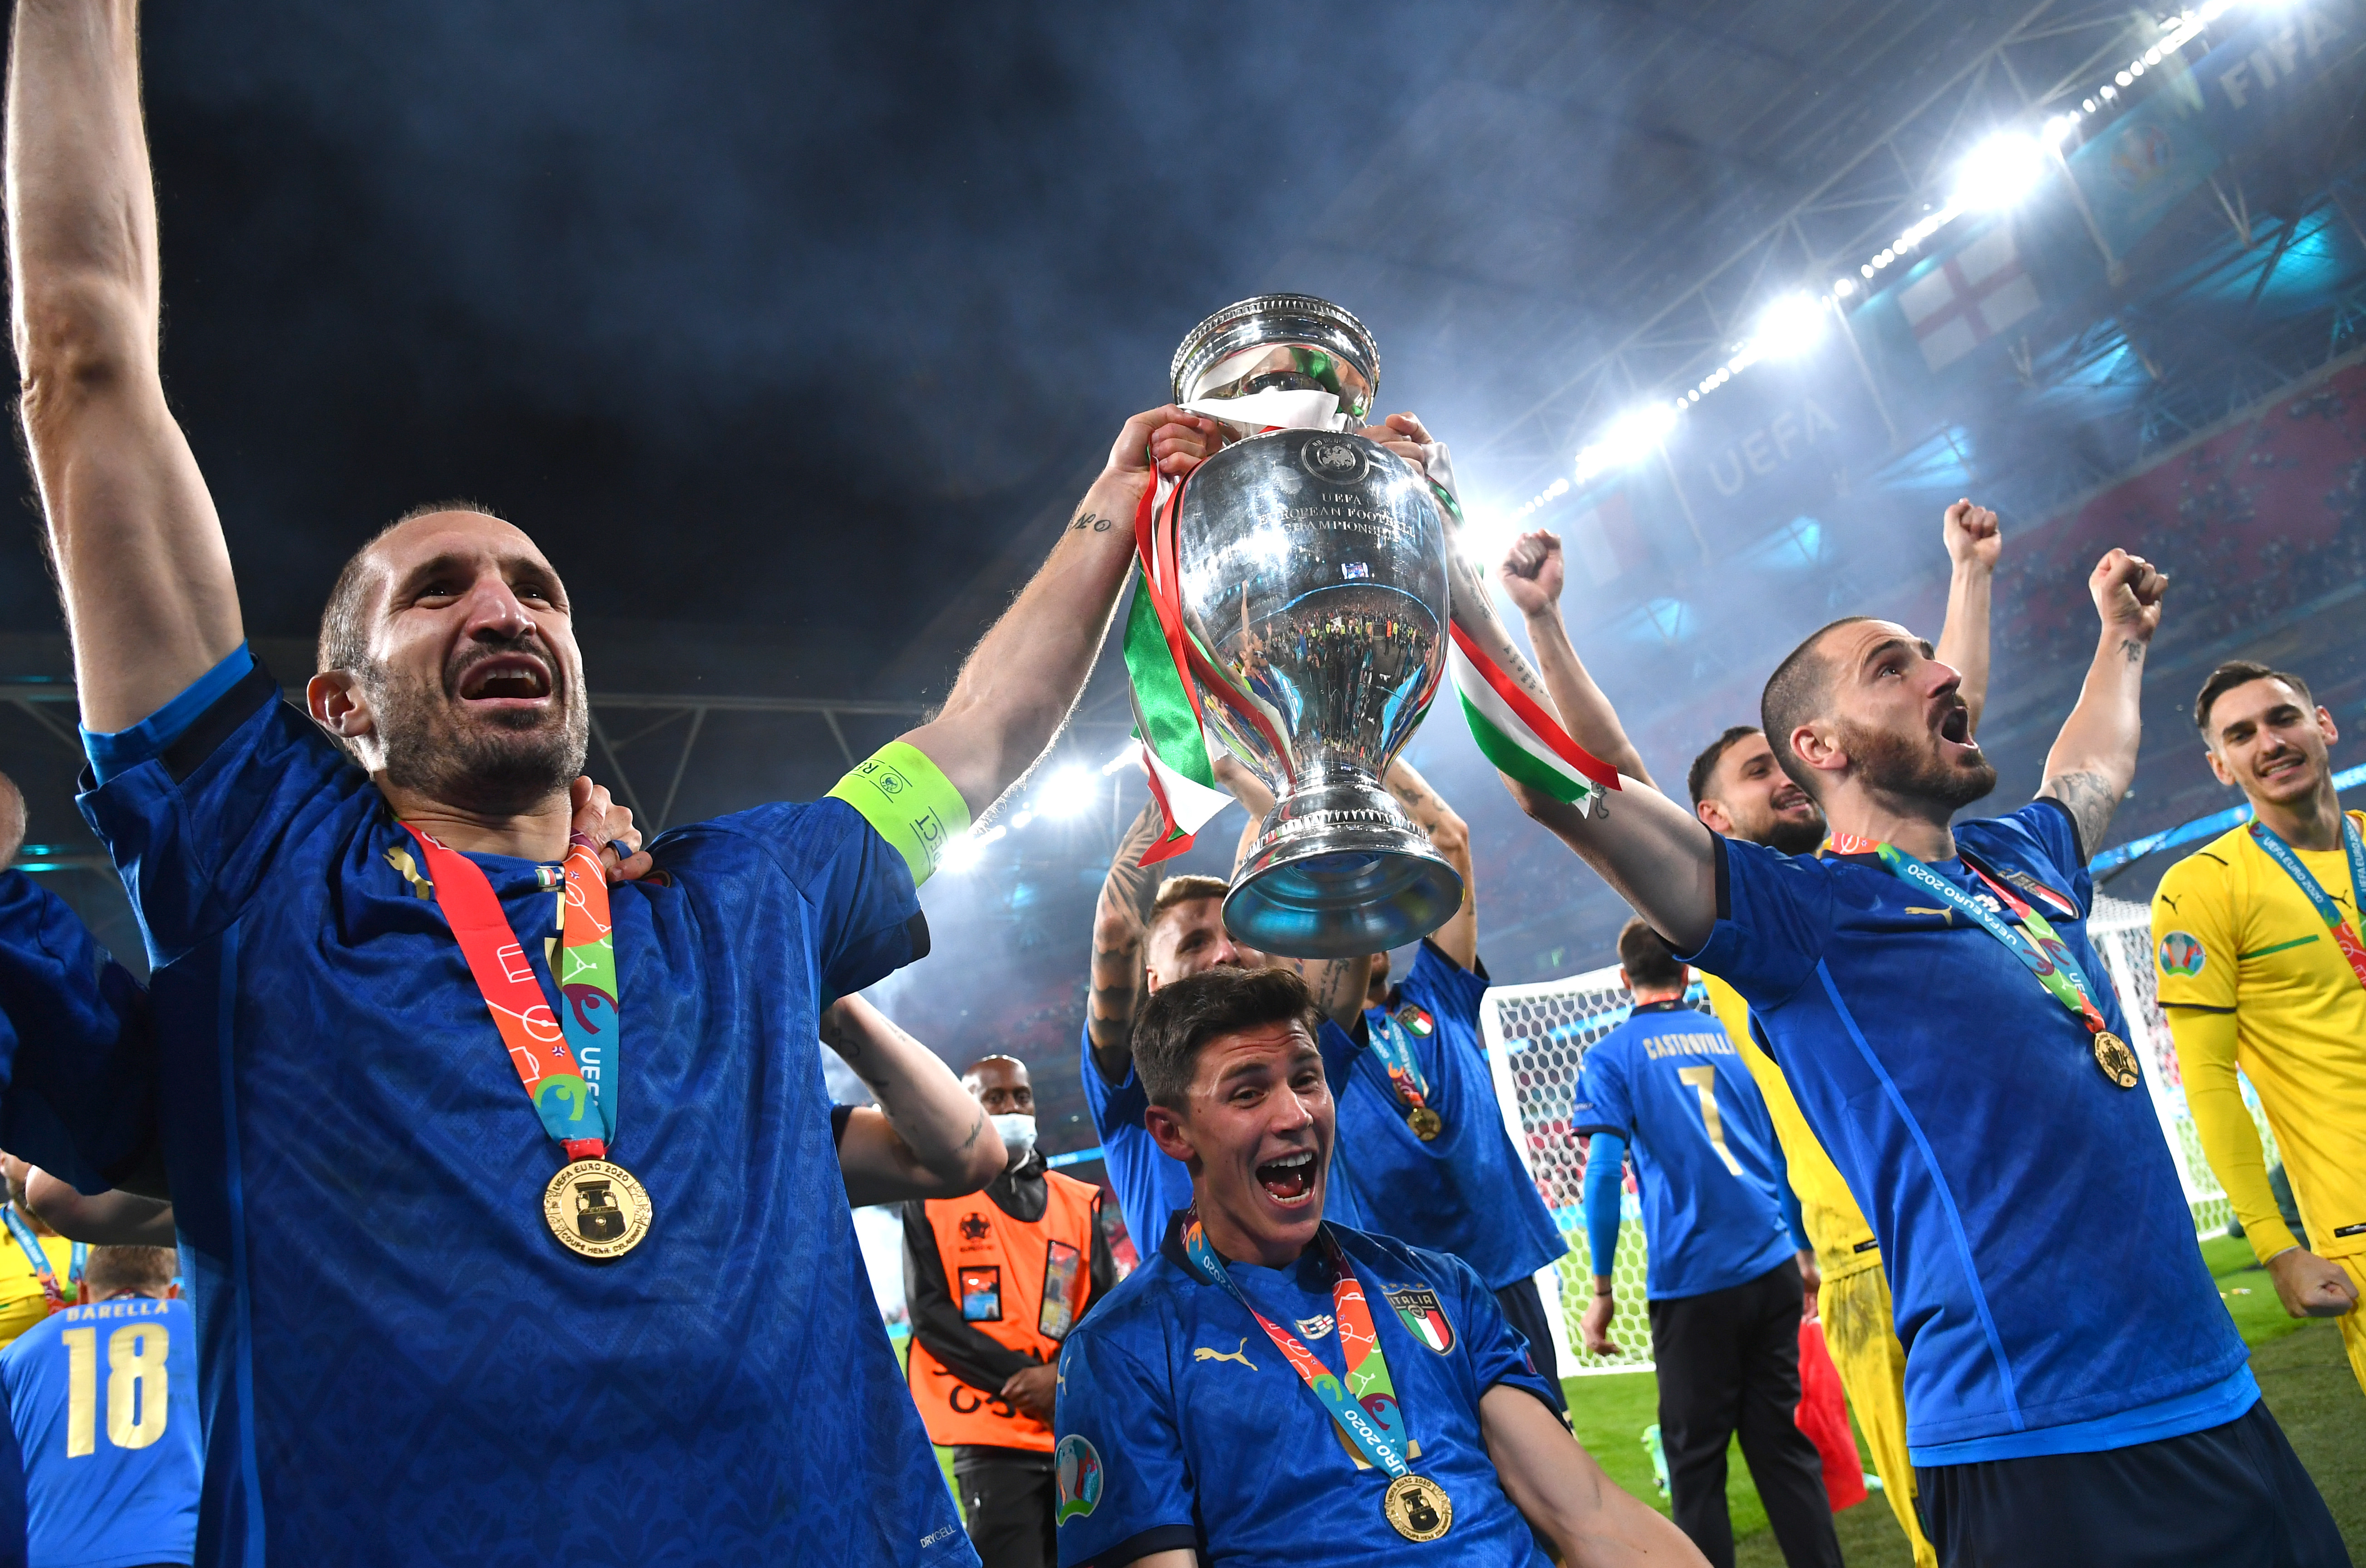 Nuovamente a casa: dal 5 ottobre la Coppa dell'Europeo torna in esposizione al  Museo del Calcio